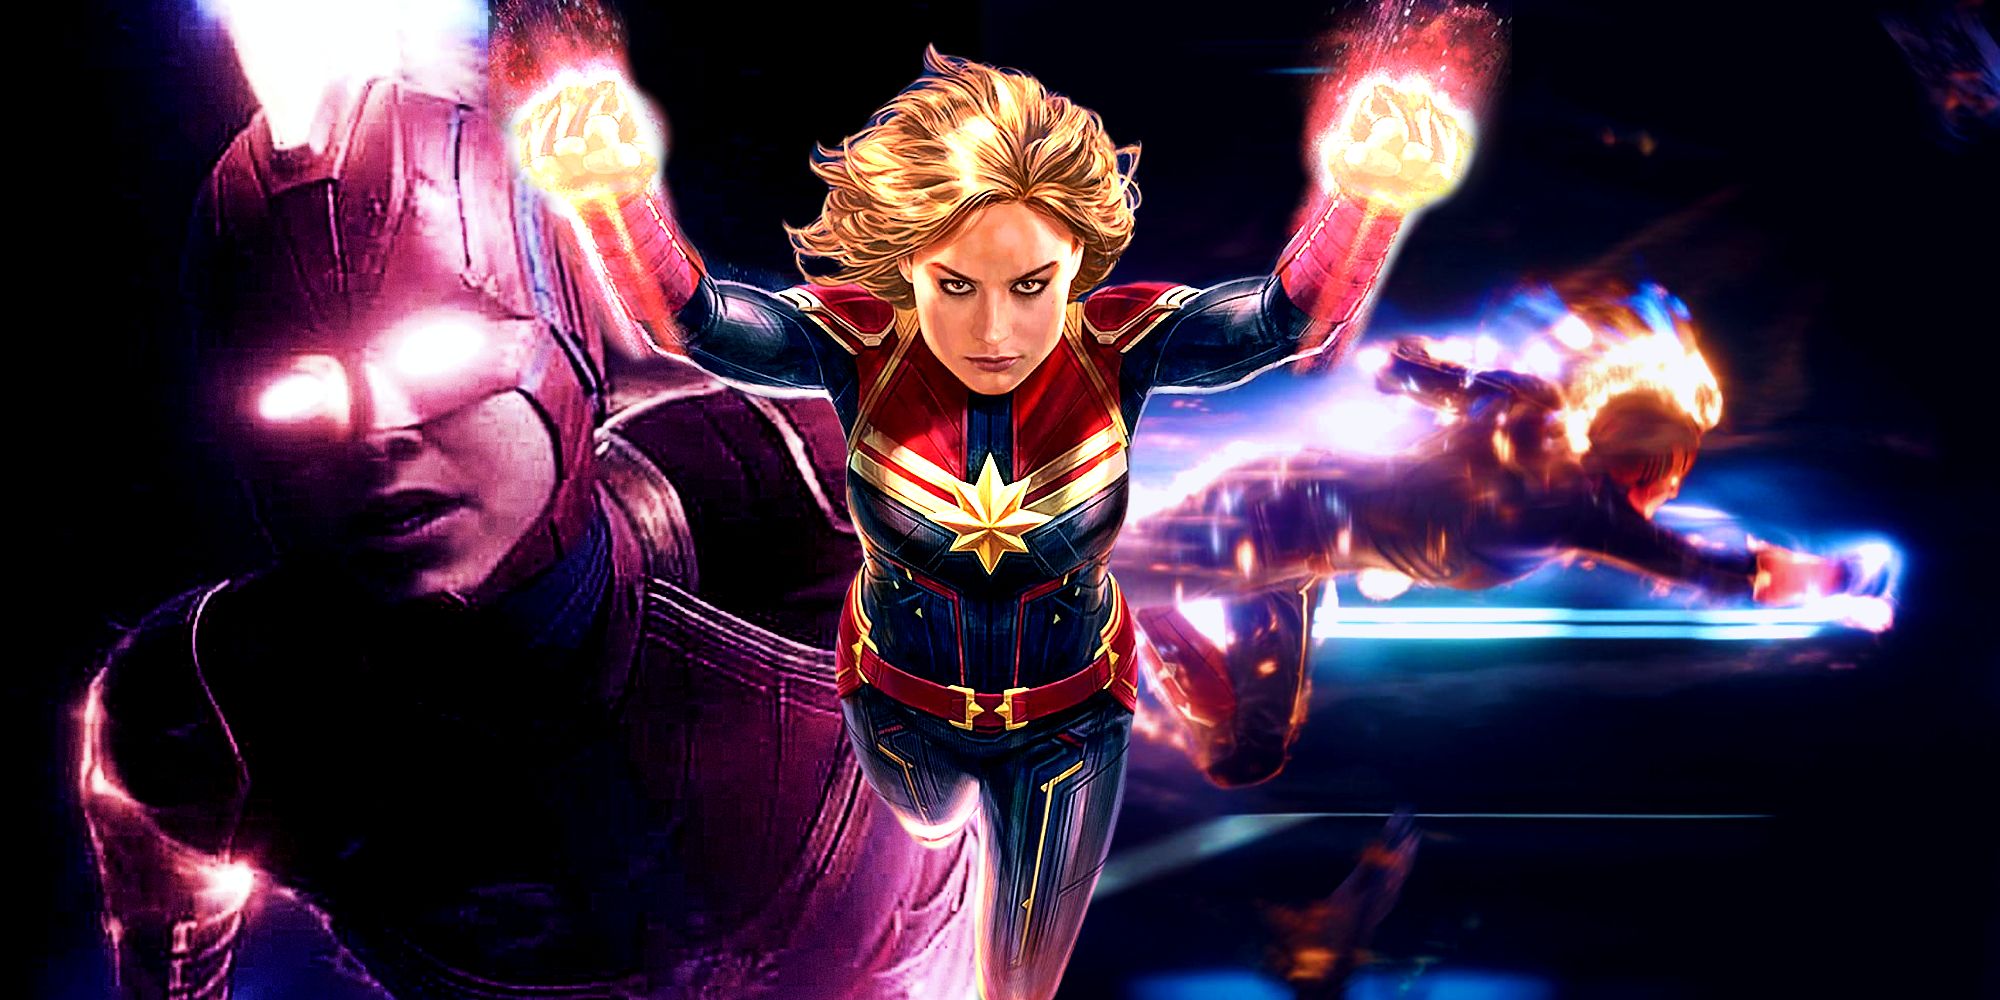 “No puedo destruirte, no puedo golpearte, no puedo arrojarte cosas”: Captain Marvel nombra al único villano que sus poderes no pueden derrotar